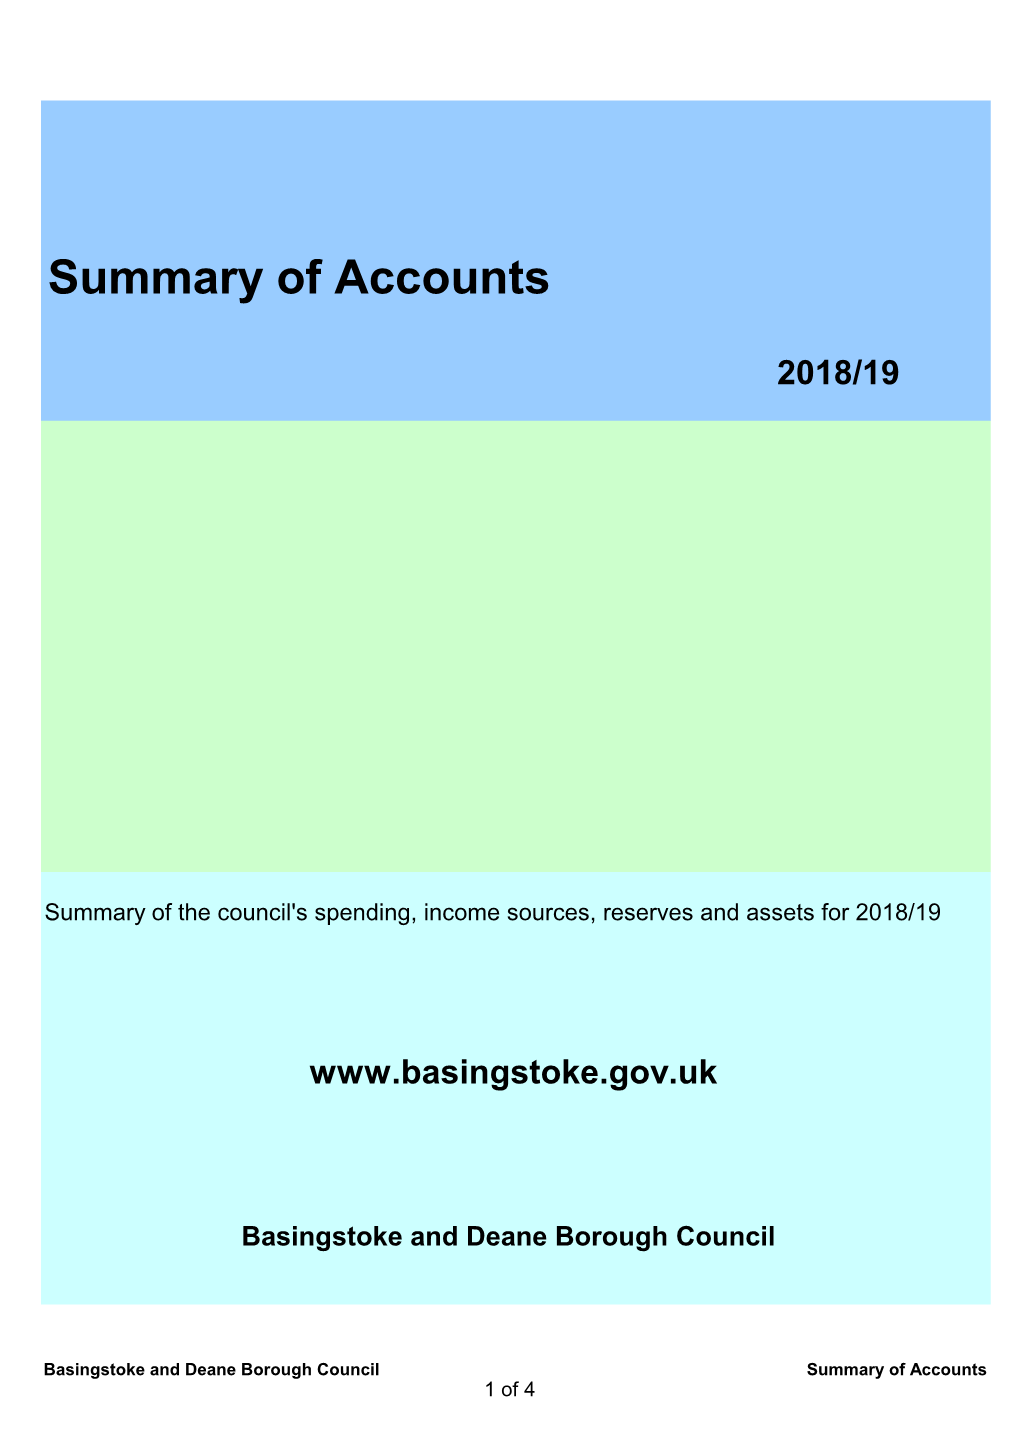 Summary of Accounts 2018-19